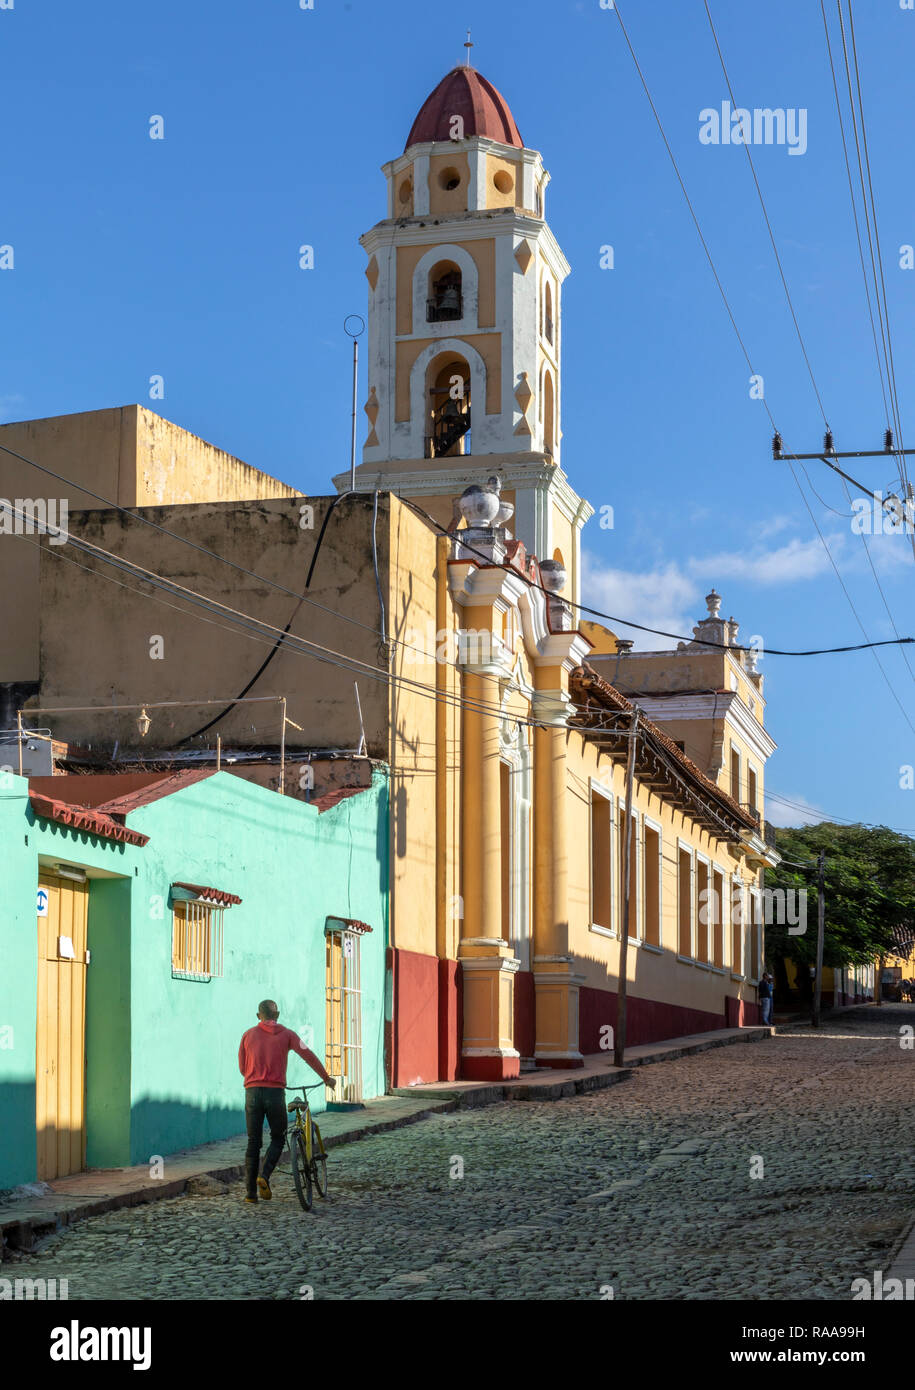 Homme marchant le long de la Calle vélos Boca ci-dessous beffroi de l'ancien couvent San Francisco, Trinidad, Cuba Banque D'Images